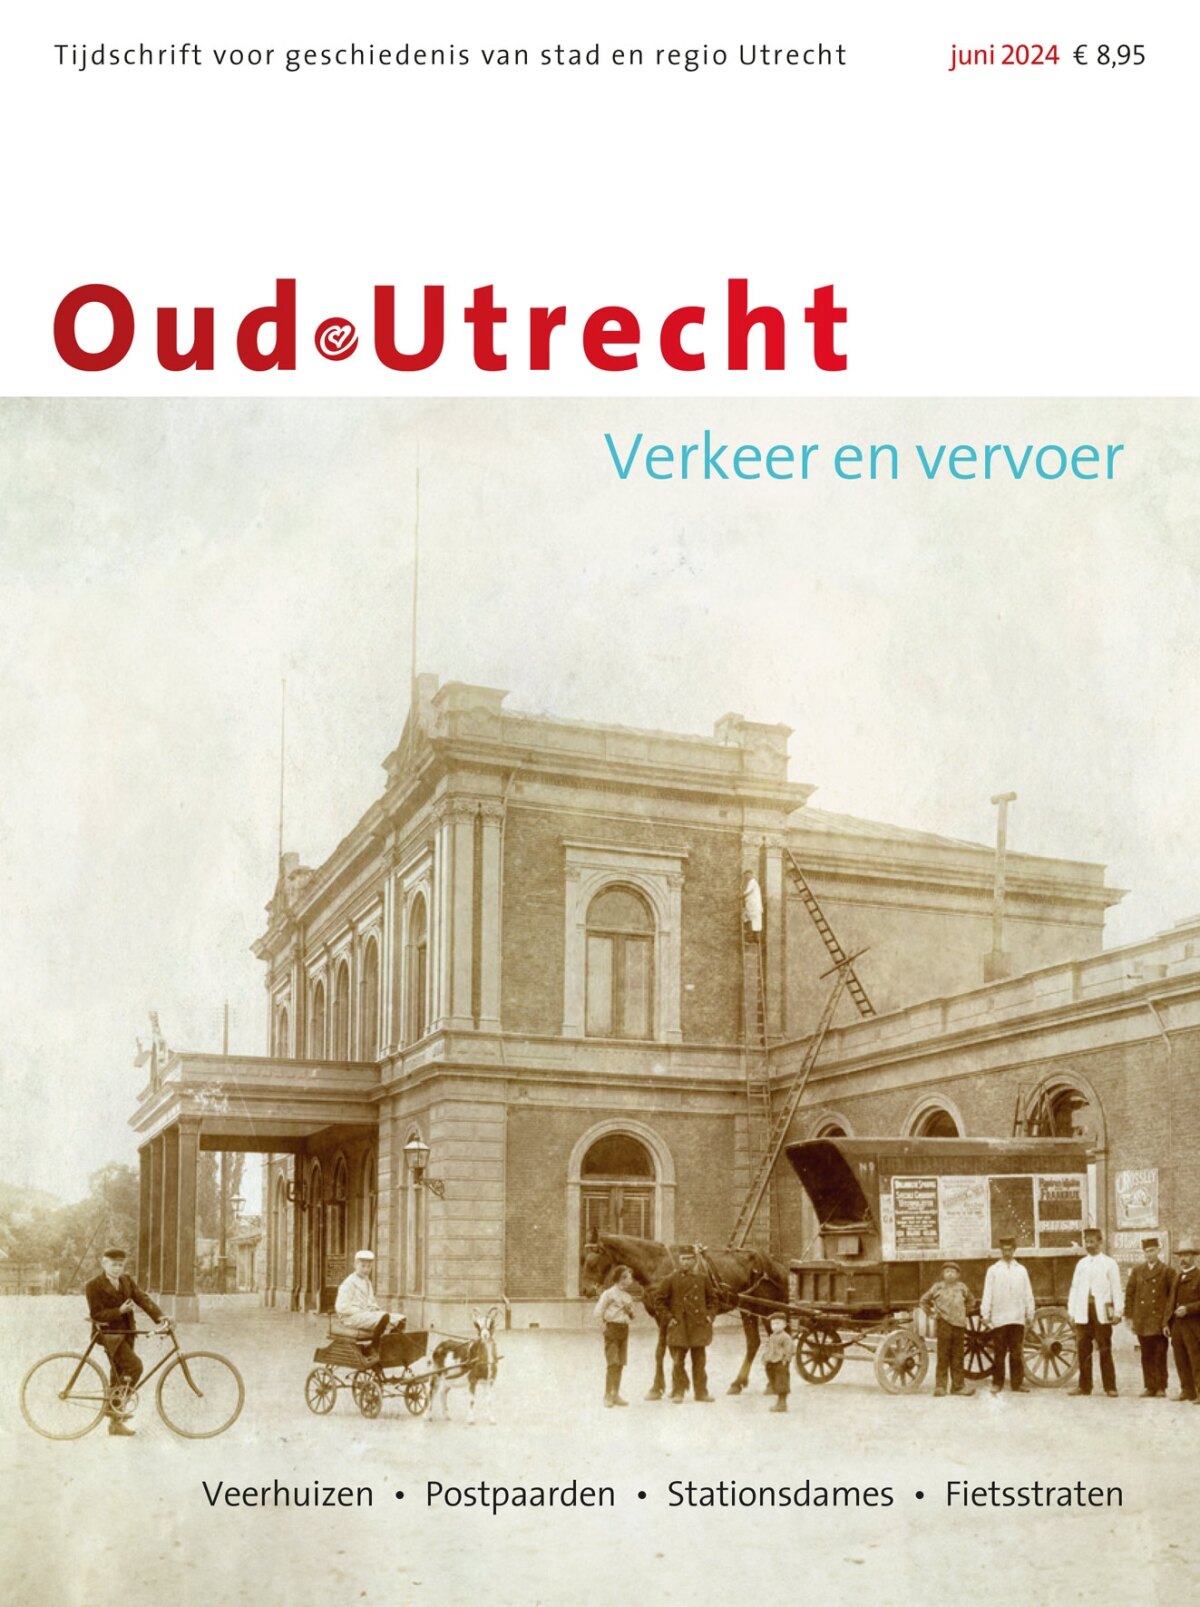 De omslag van het nieuwe tijdschrift Oud-Utrecht.